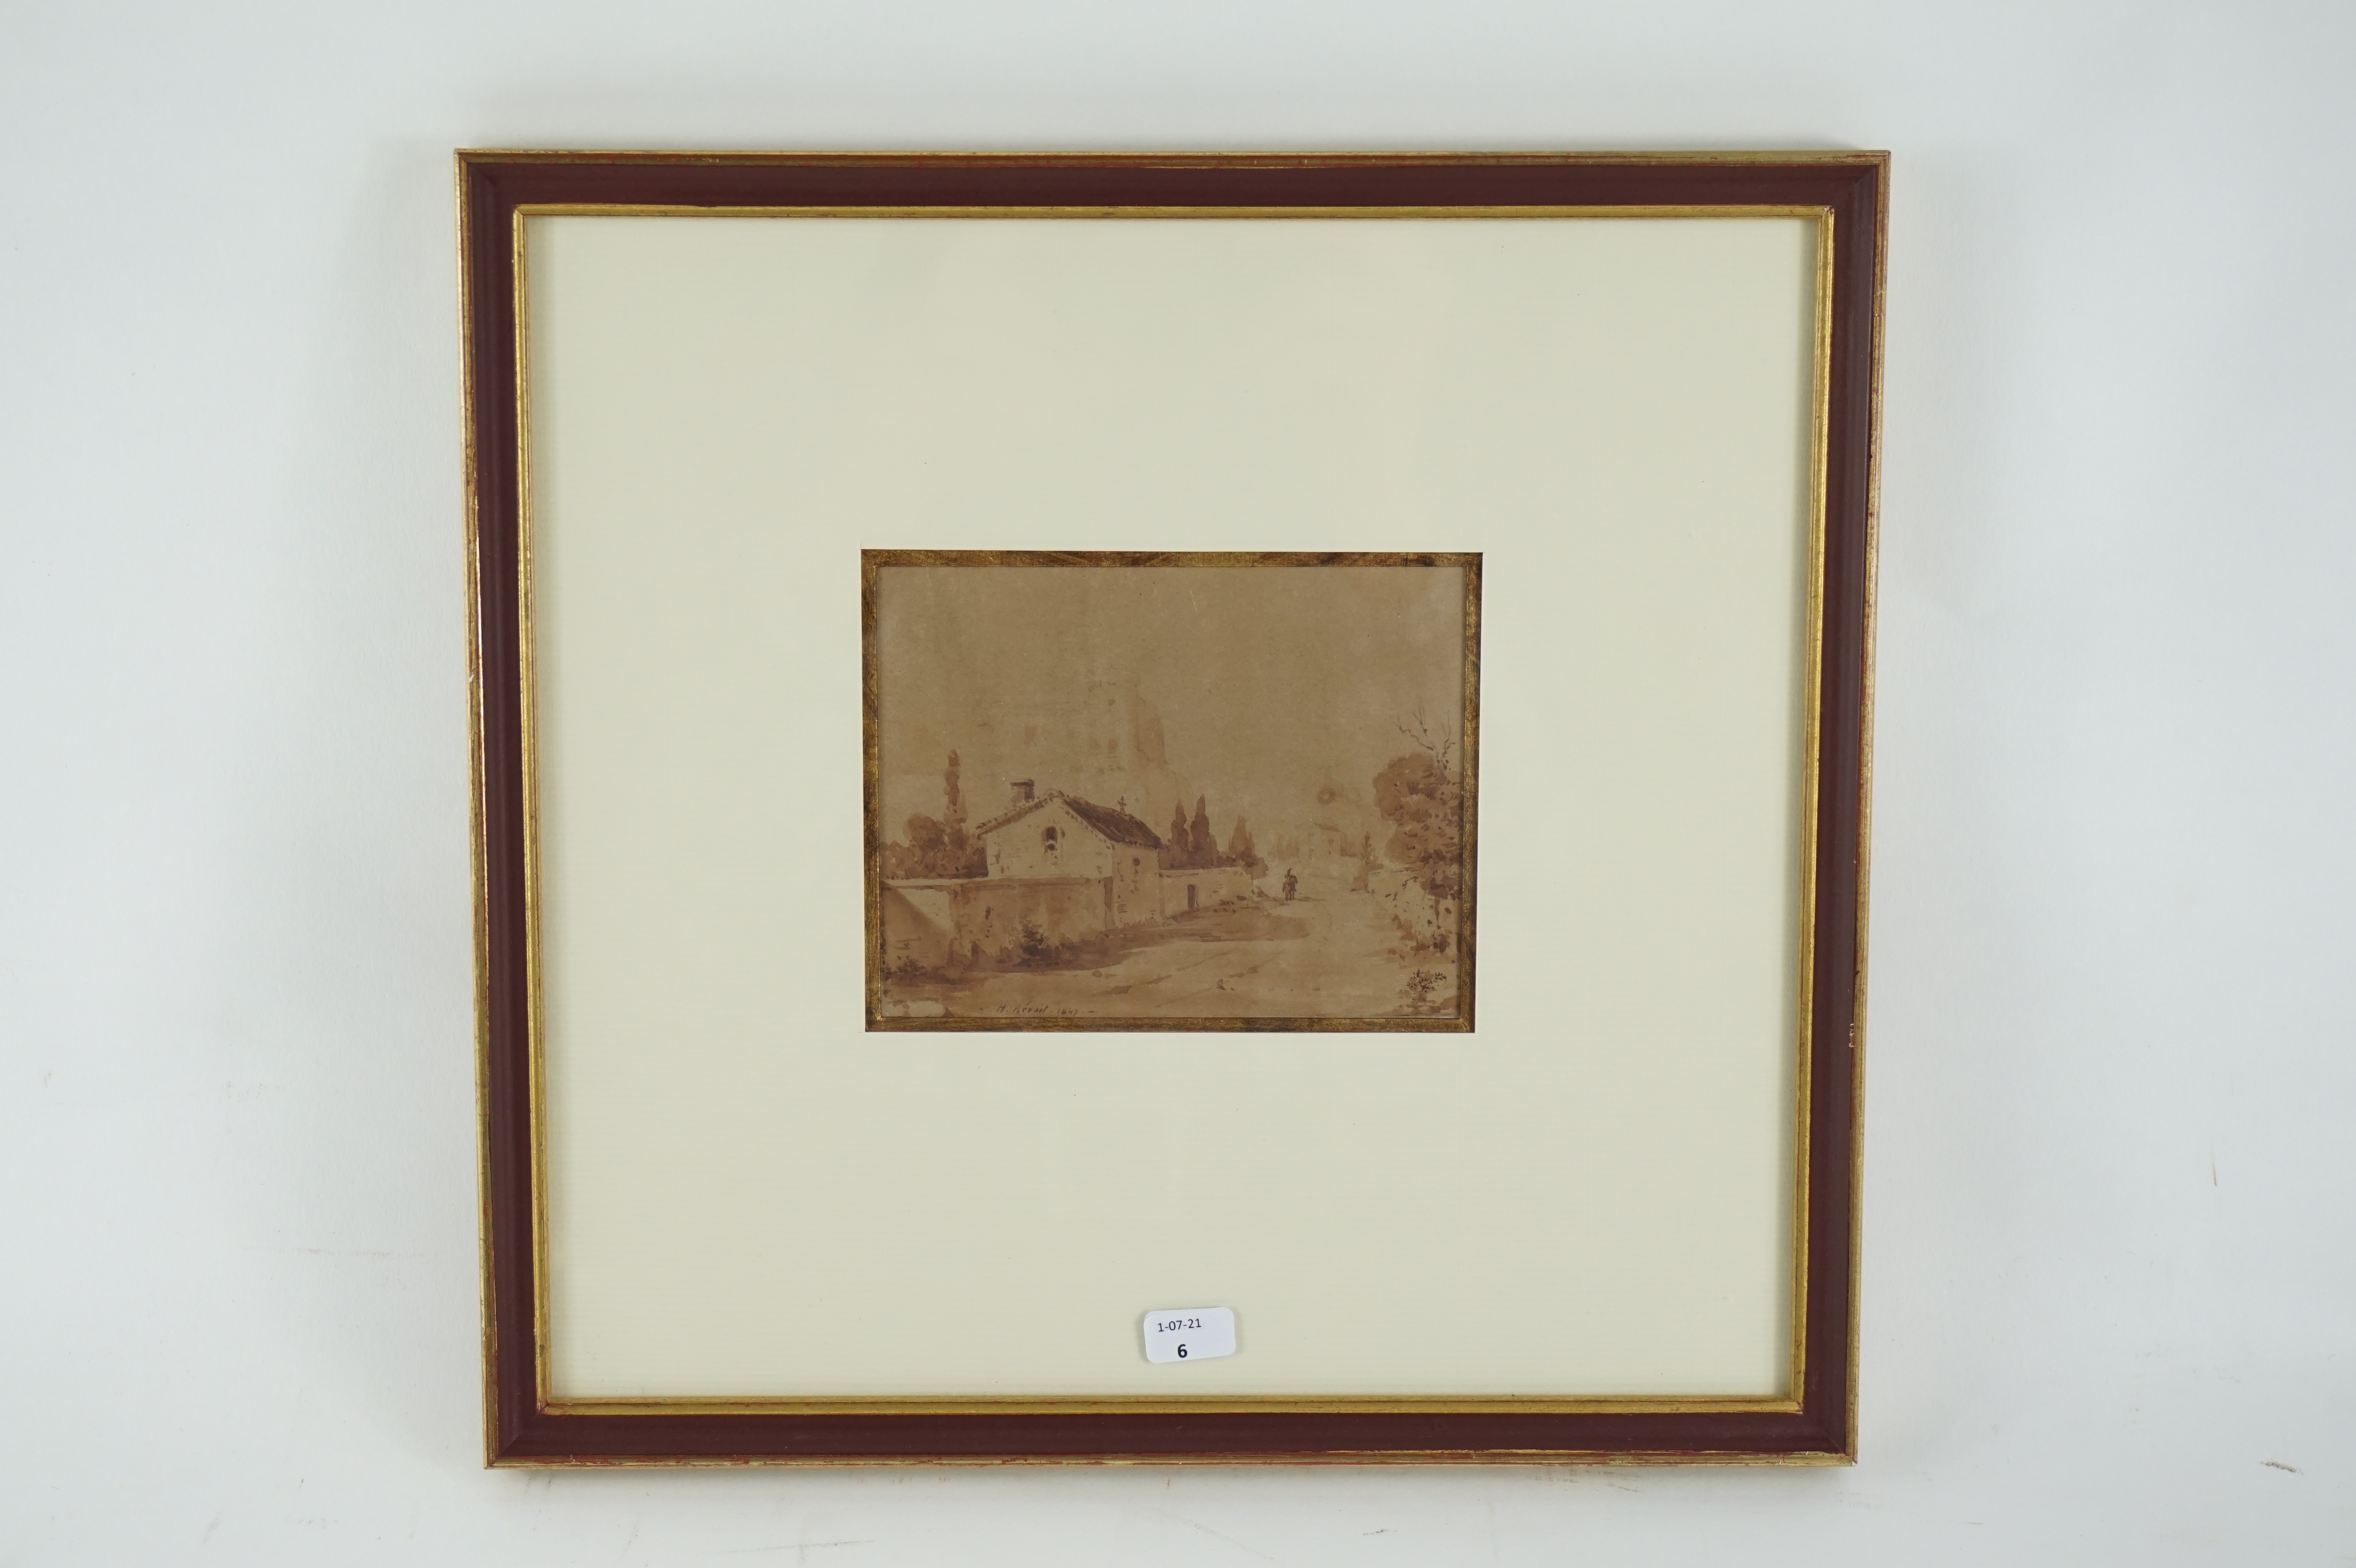 H. RÉVOIL (XIXe). Paysage de village avec vue de fort. Lavis d'encre sur papier portant une signature H. RÉVOIL et daté 1849. Vue : 9 x 11,5 cm. Cadre : 25,8 x 27 cm.